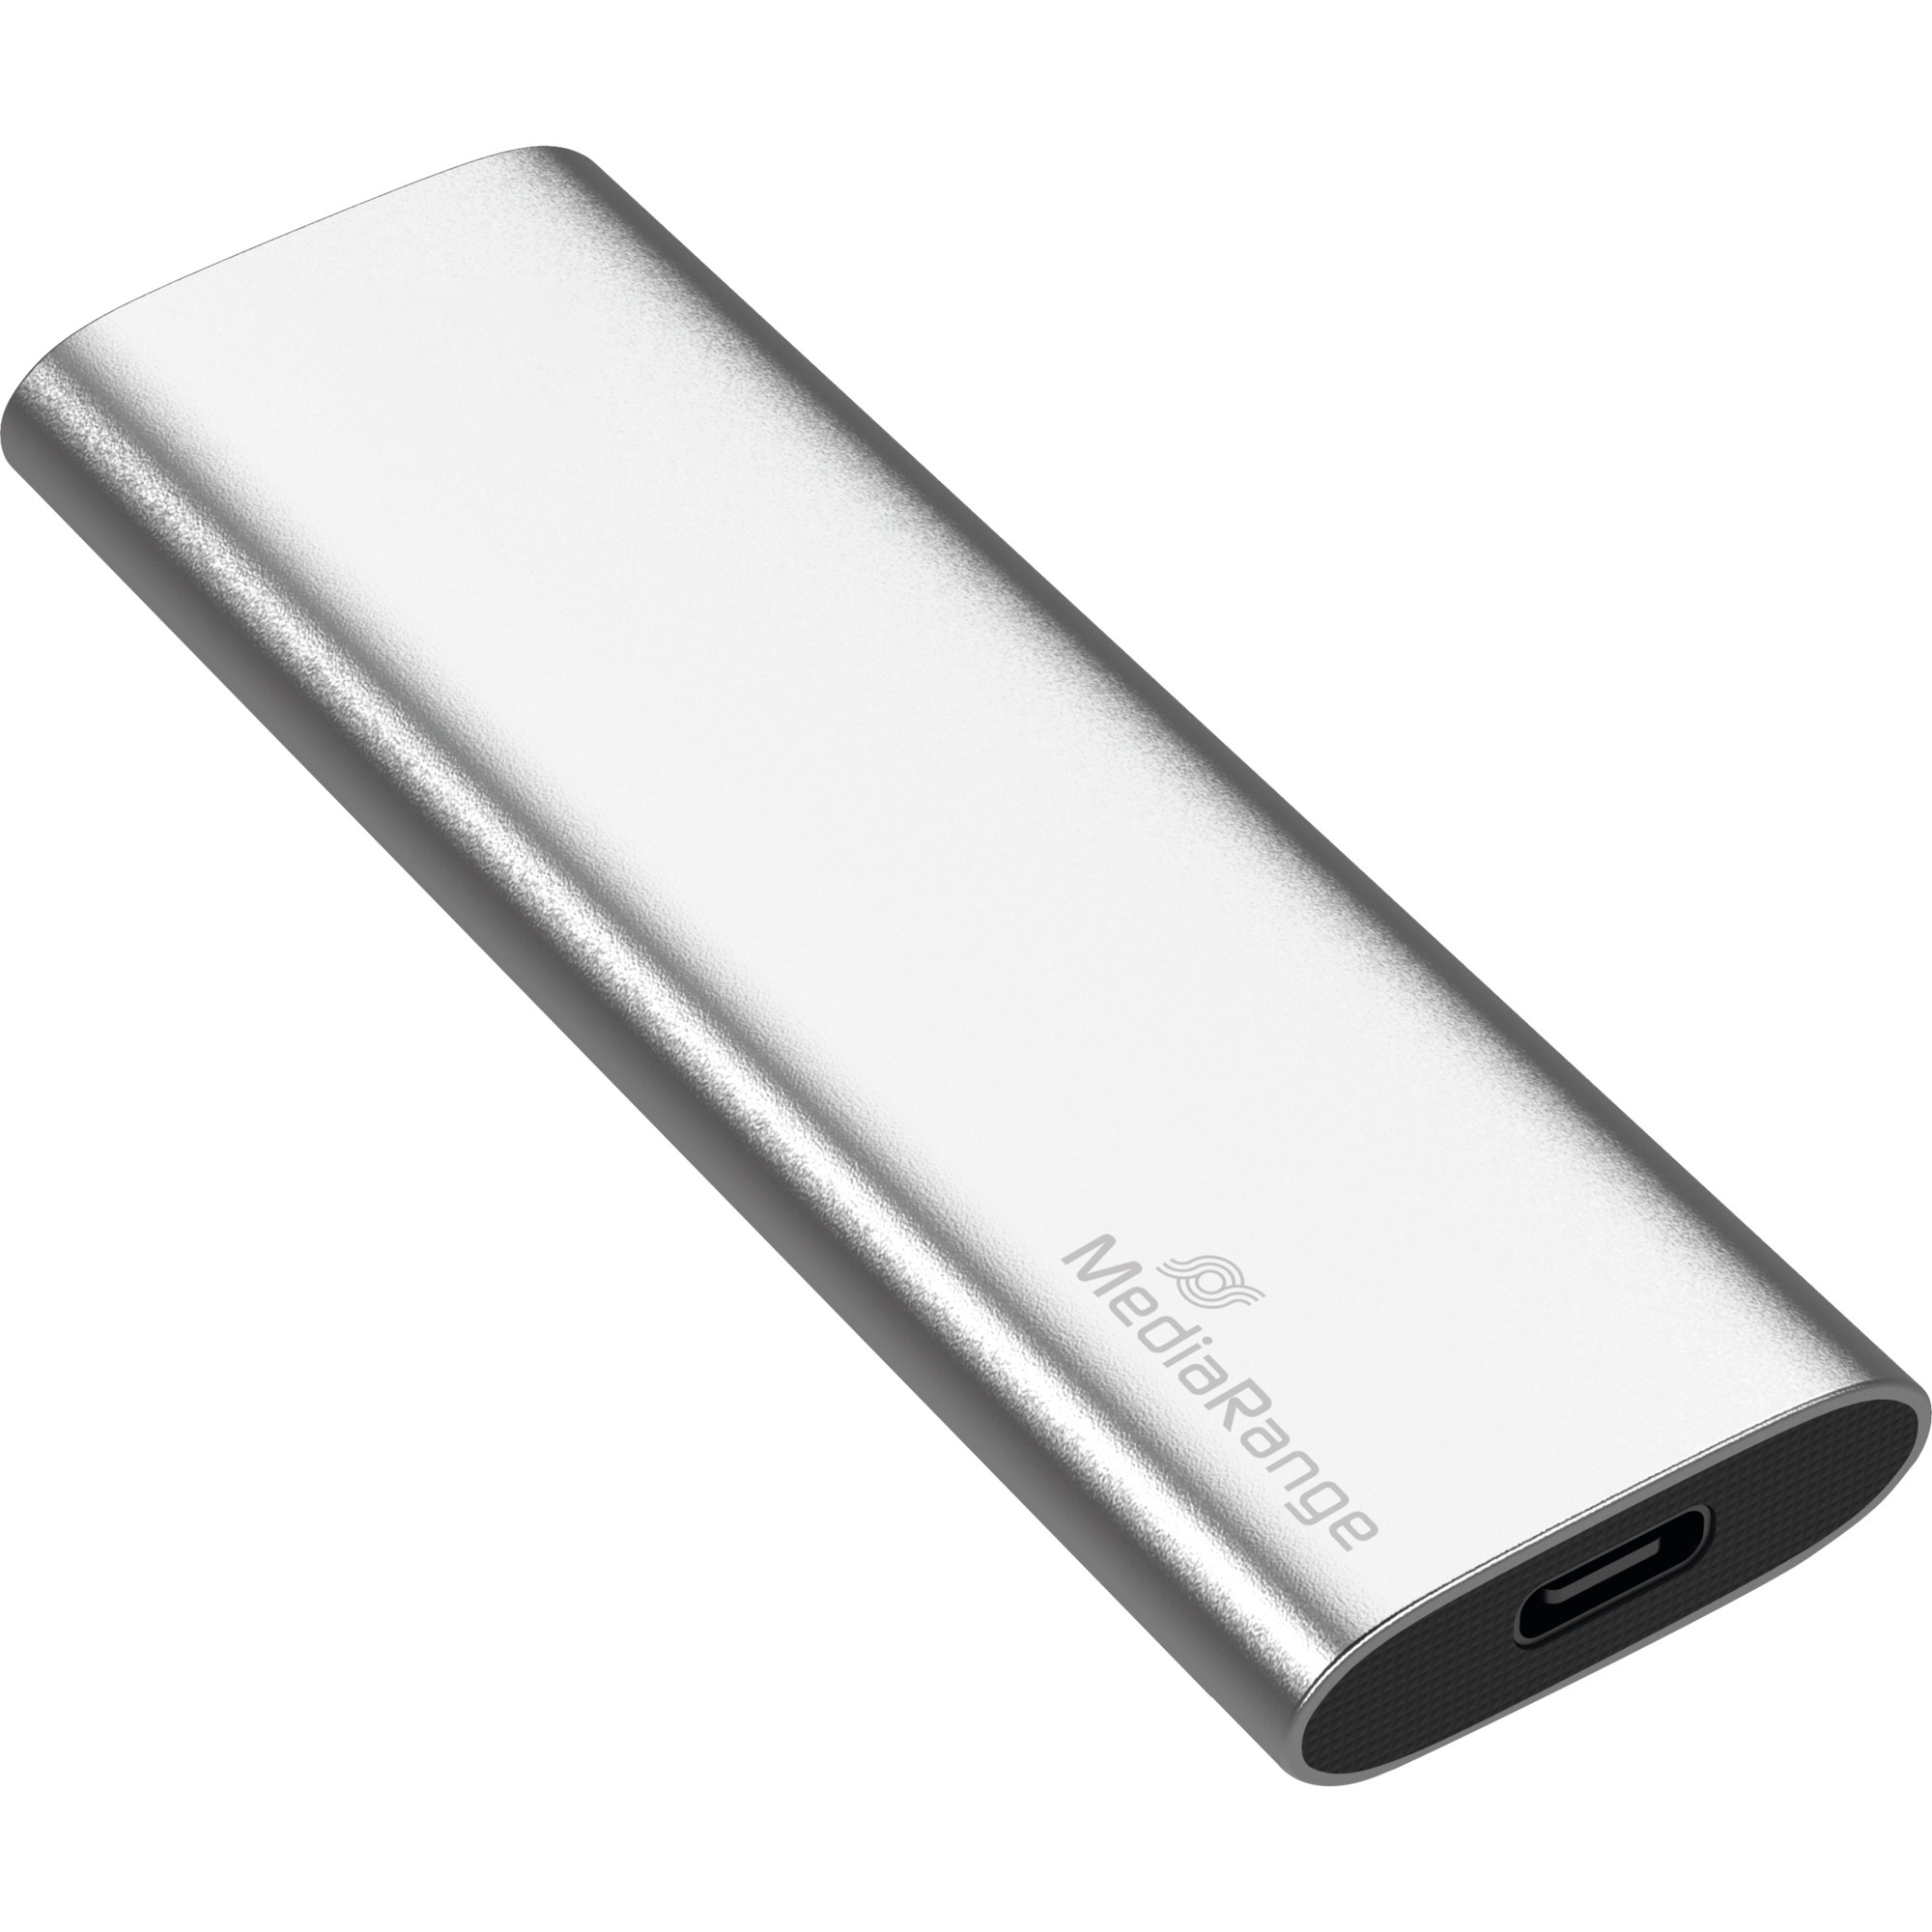 Image of Alternate - 240 GB, Externe SSD online einkaufen bei Alternate